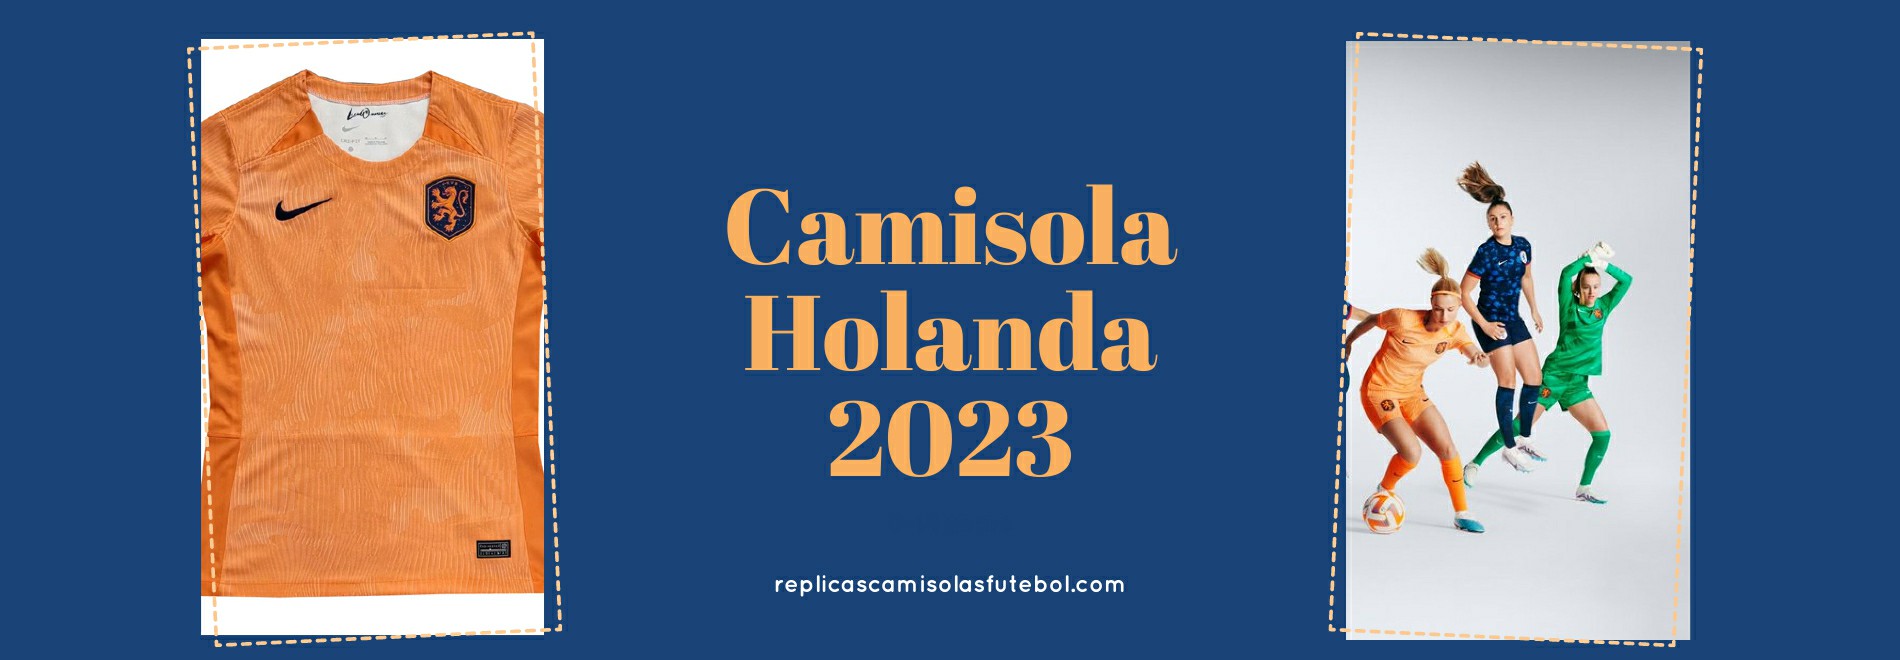 Camisola Holanda 2023-2024